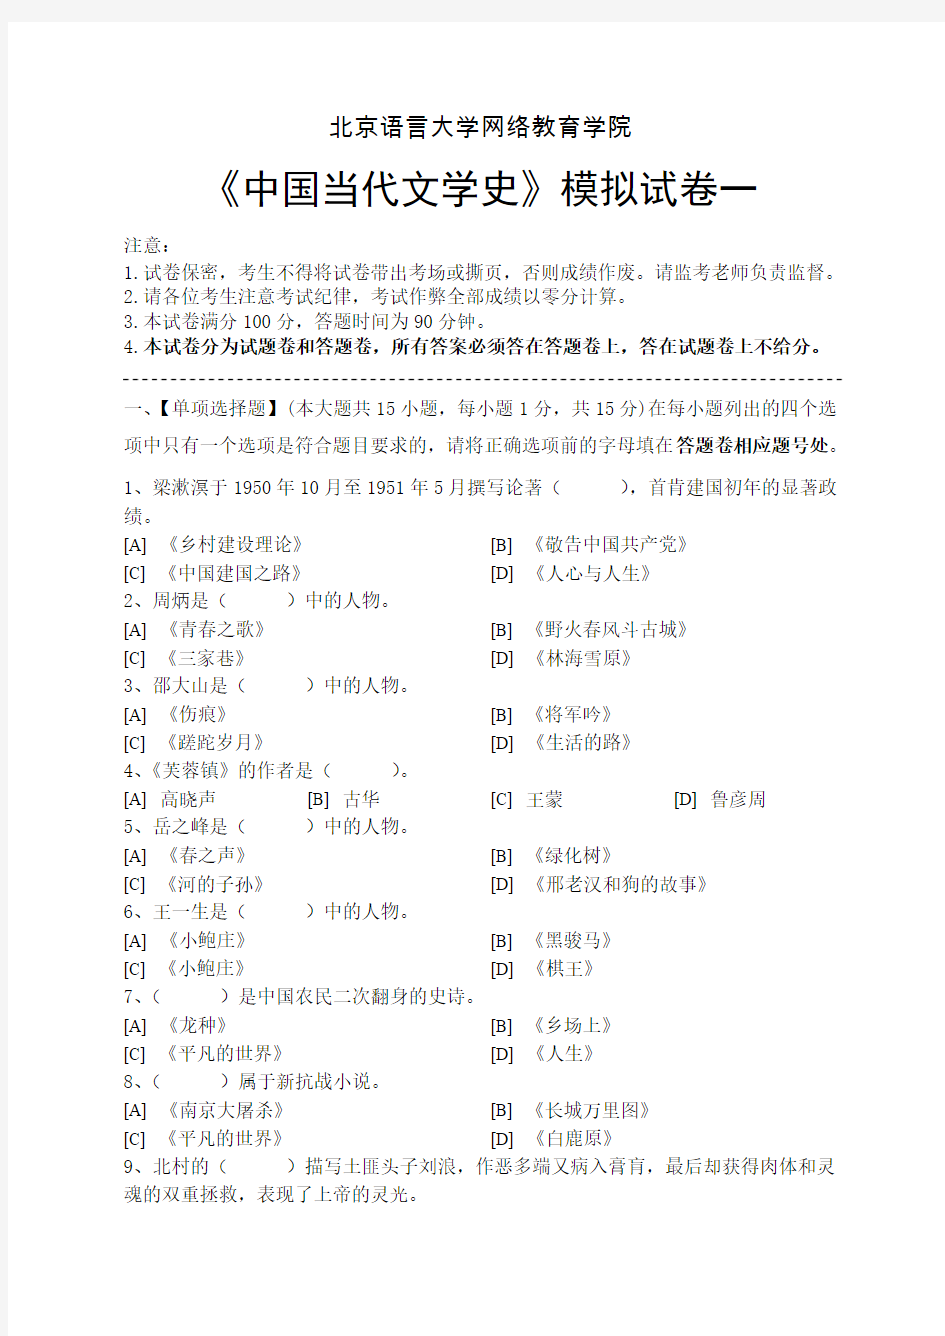 中国当代文学史模拟试卷和答案(1)讲解-共15页